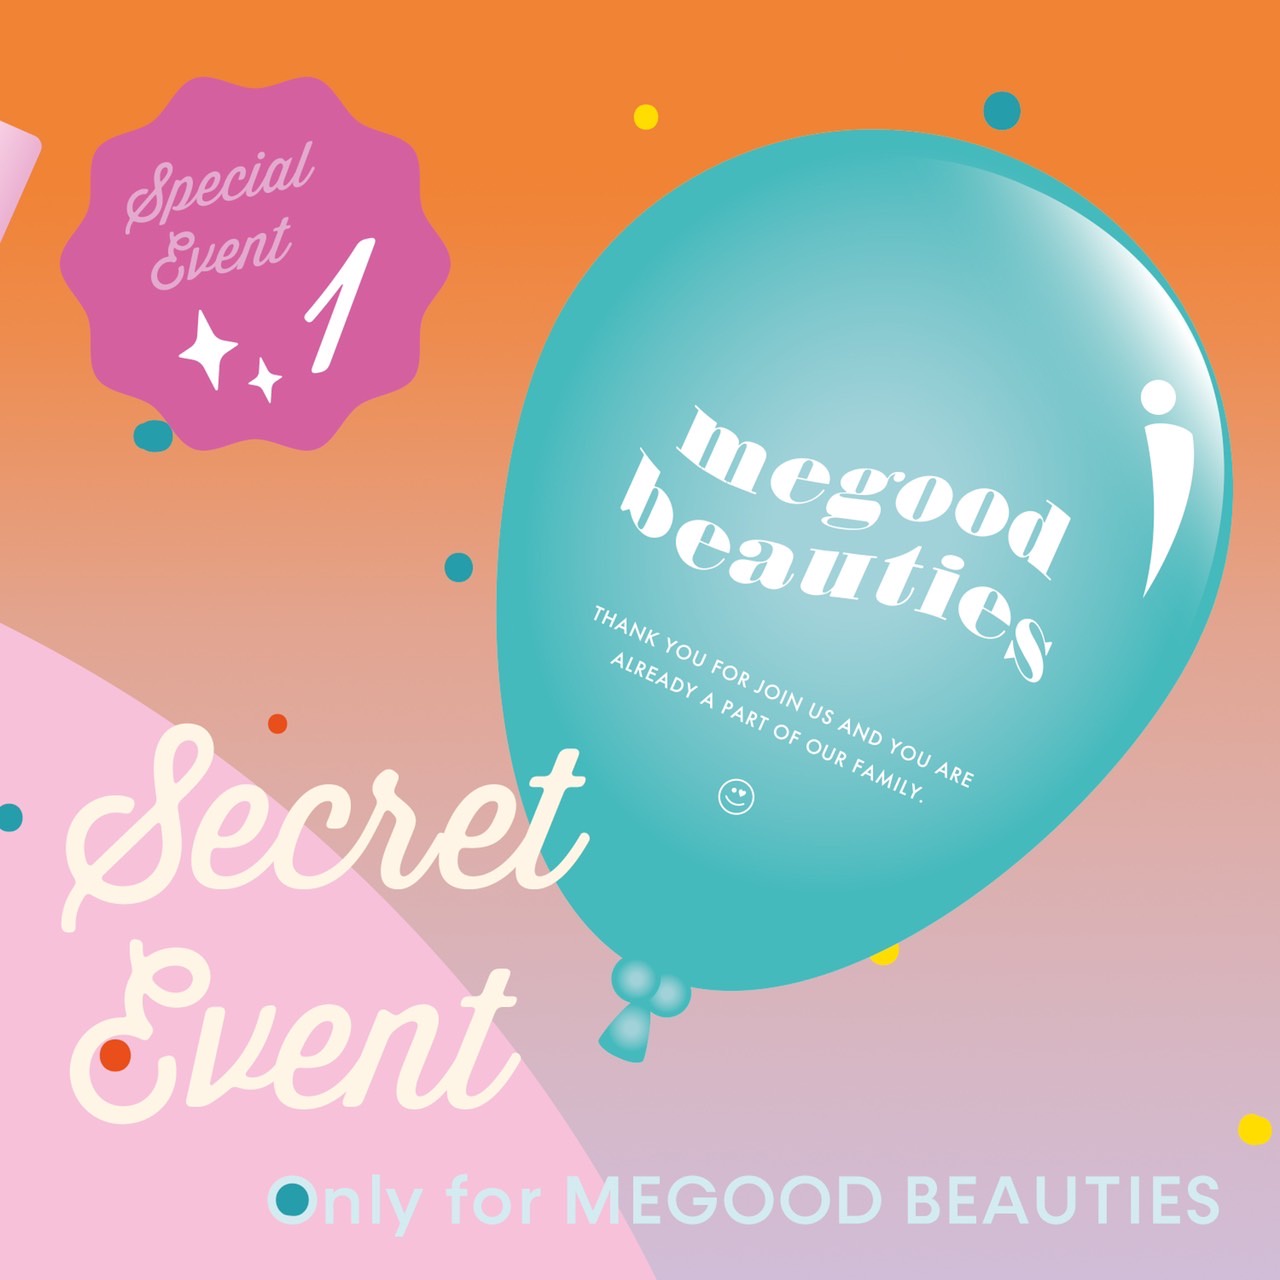 スペシャルイベント告知①】MEGOOD BEAUTY 3rd BIRTHDAY☆彡 | MEGOOD